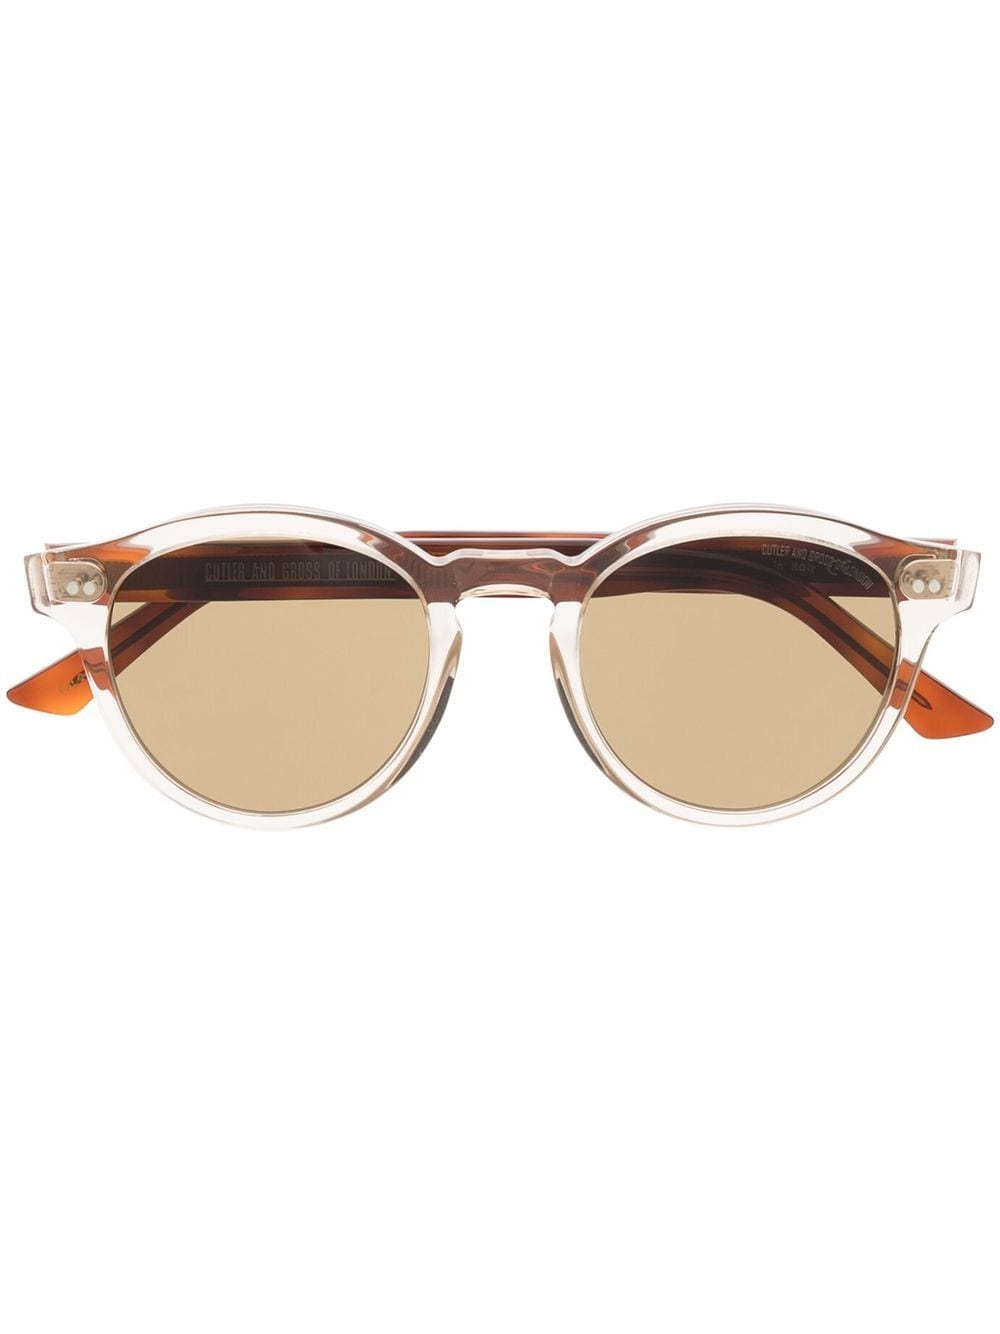 Cutler & Gross 1378 round-frame sunglasses